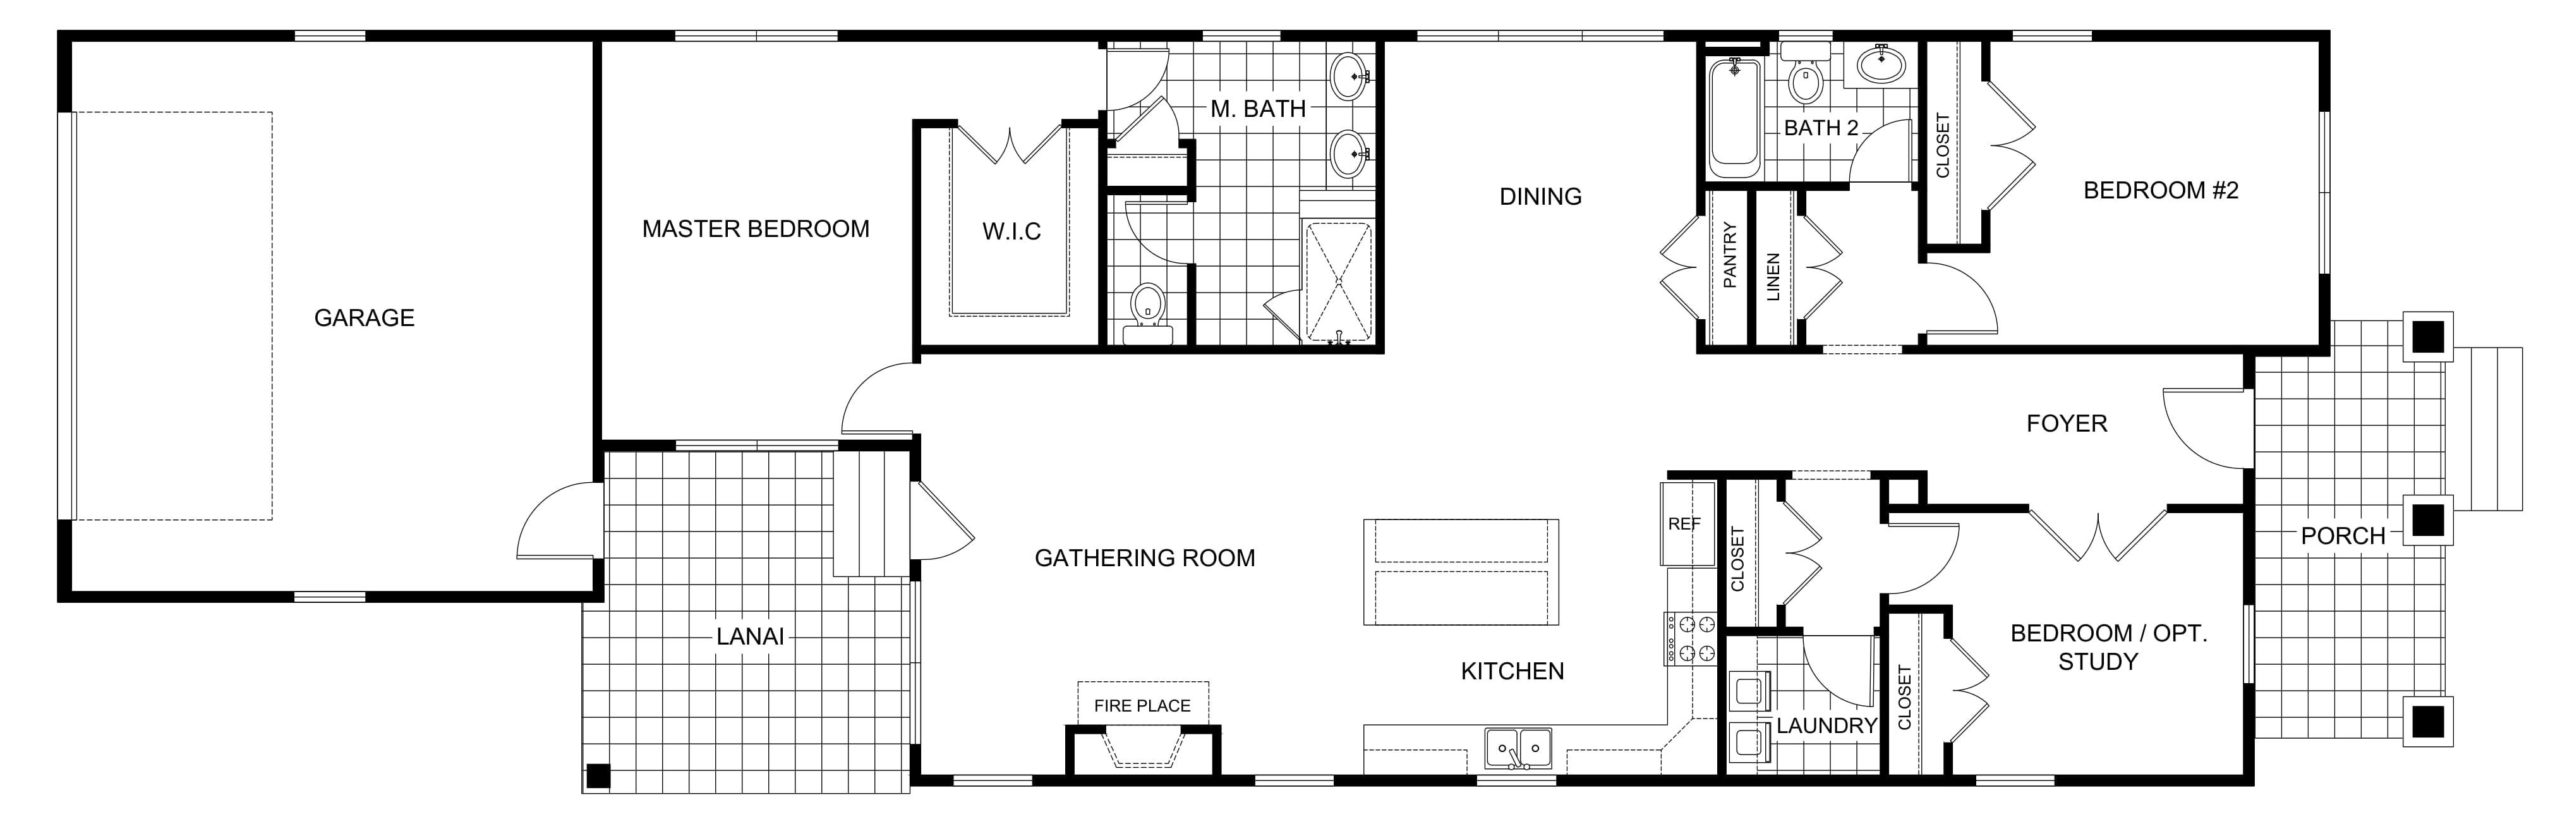 Real Estate 2D Floor Plans Design / Rendering Samples